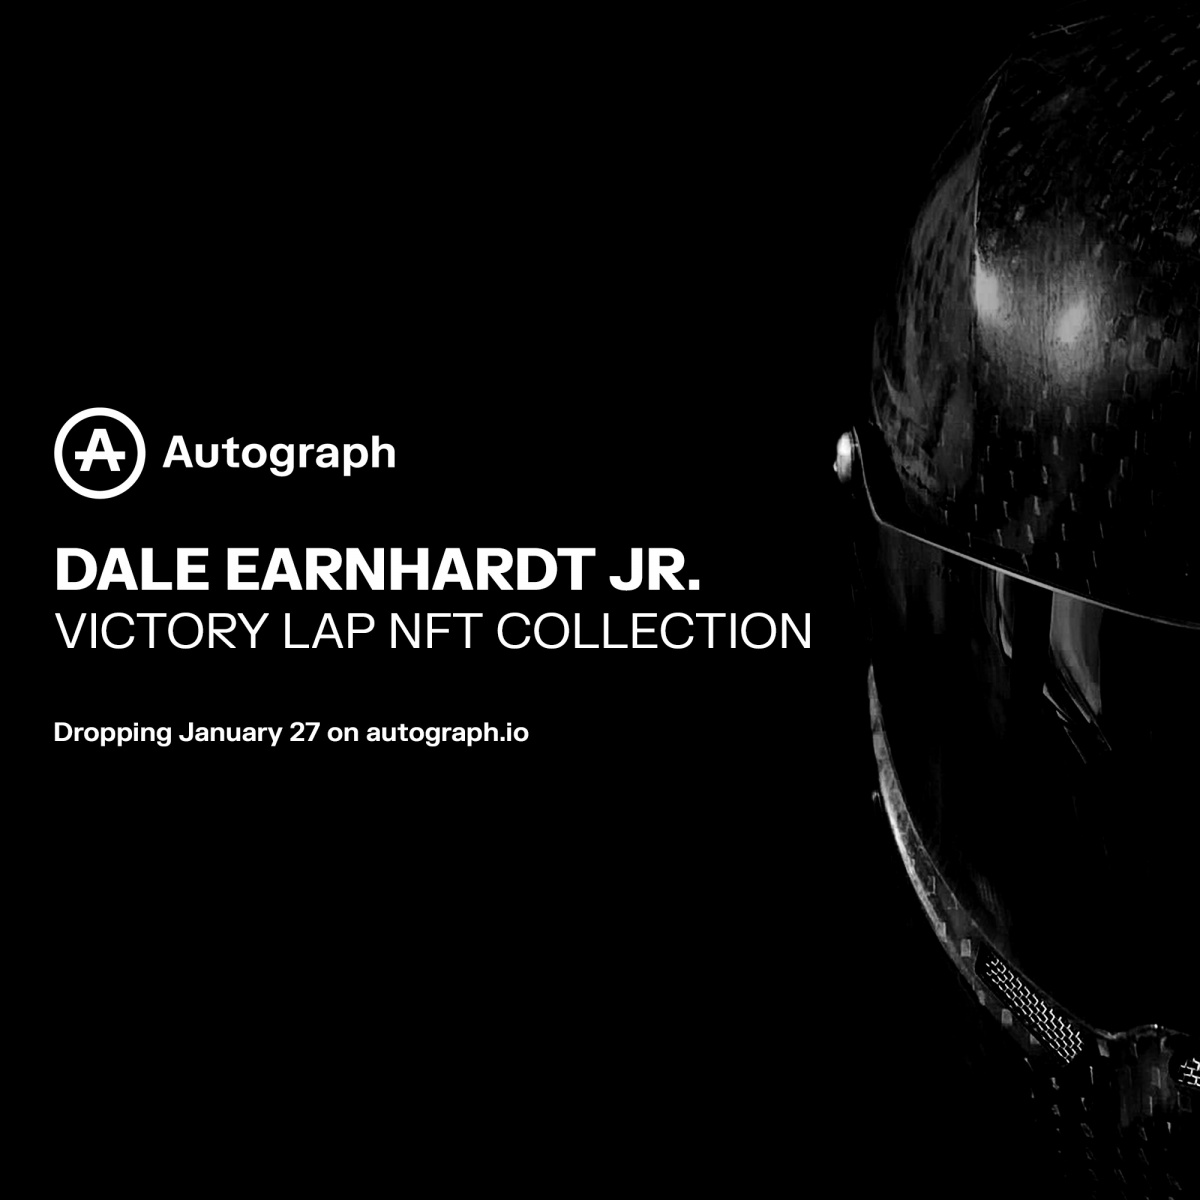 Dale Earnhardt Jr. enters the NFT space